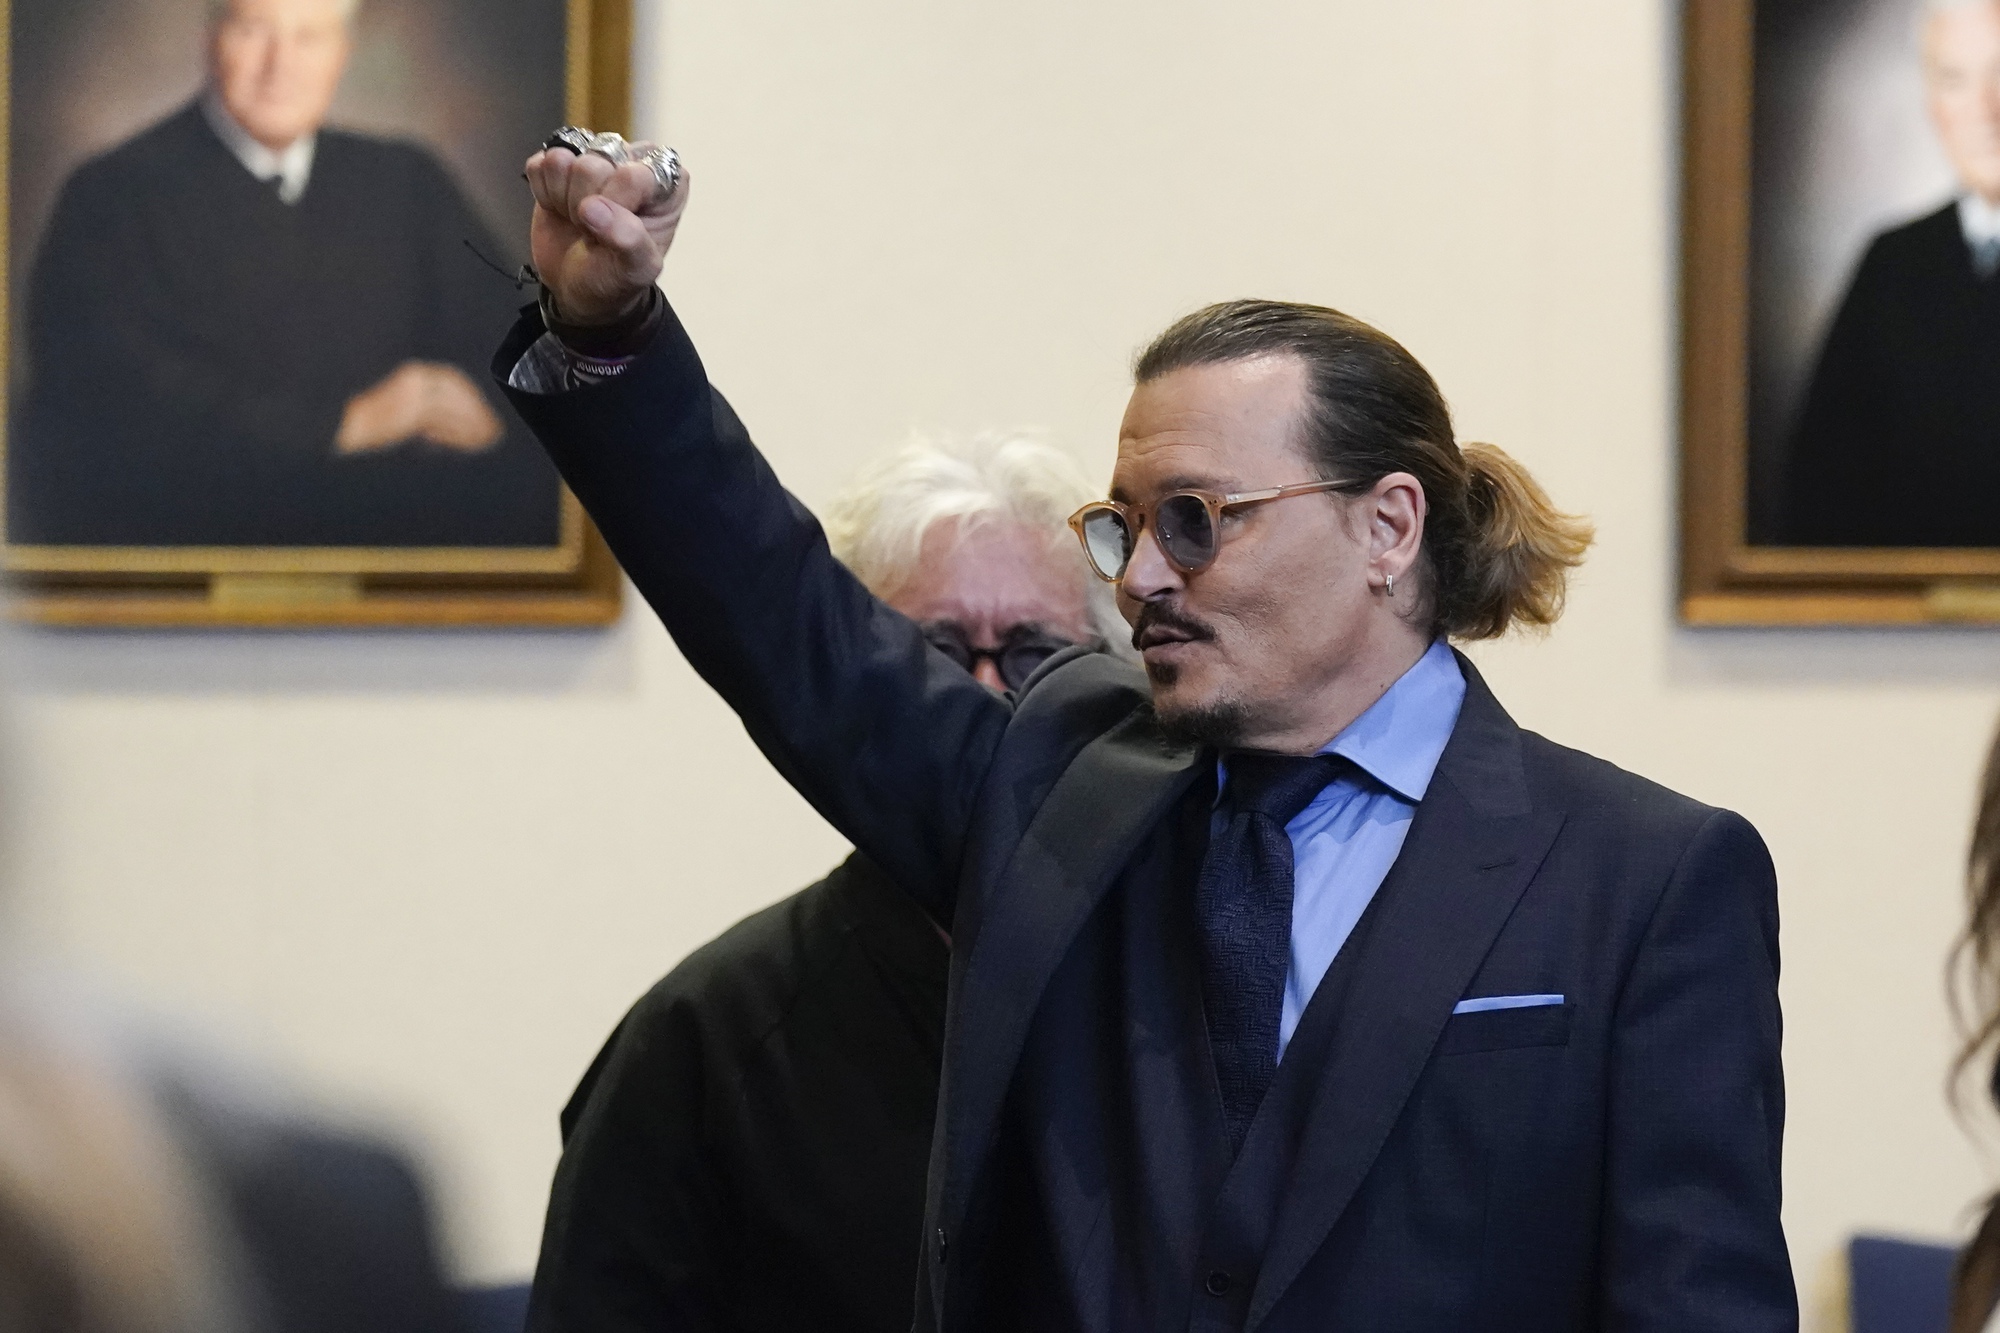 Johnny Depp mời bạn gái tới buổi hòa nhạc, mặc kệ phán quyết của tòa - Ảnh 1.